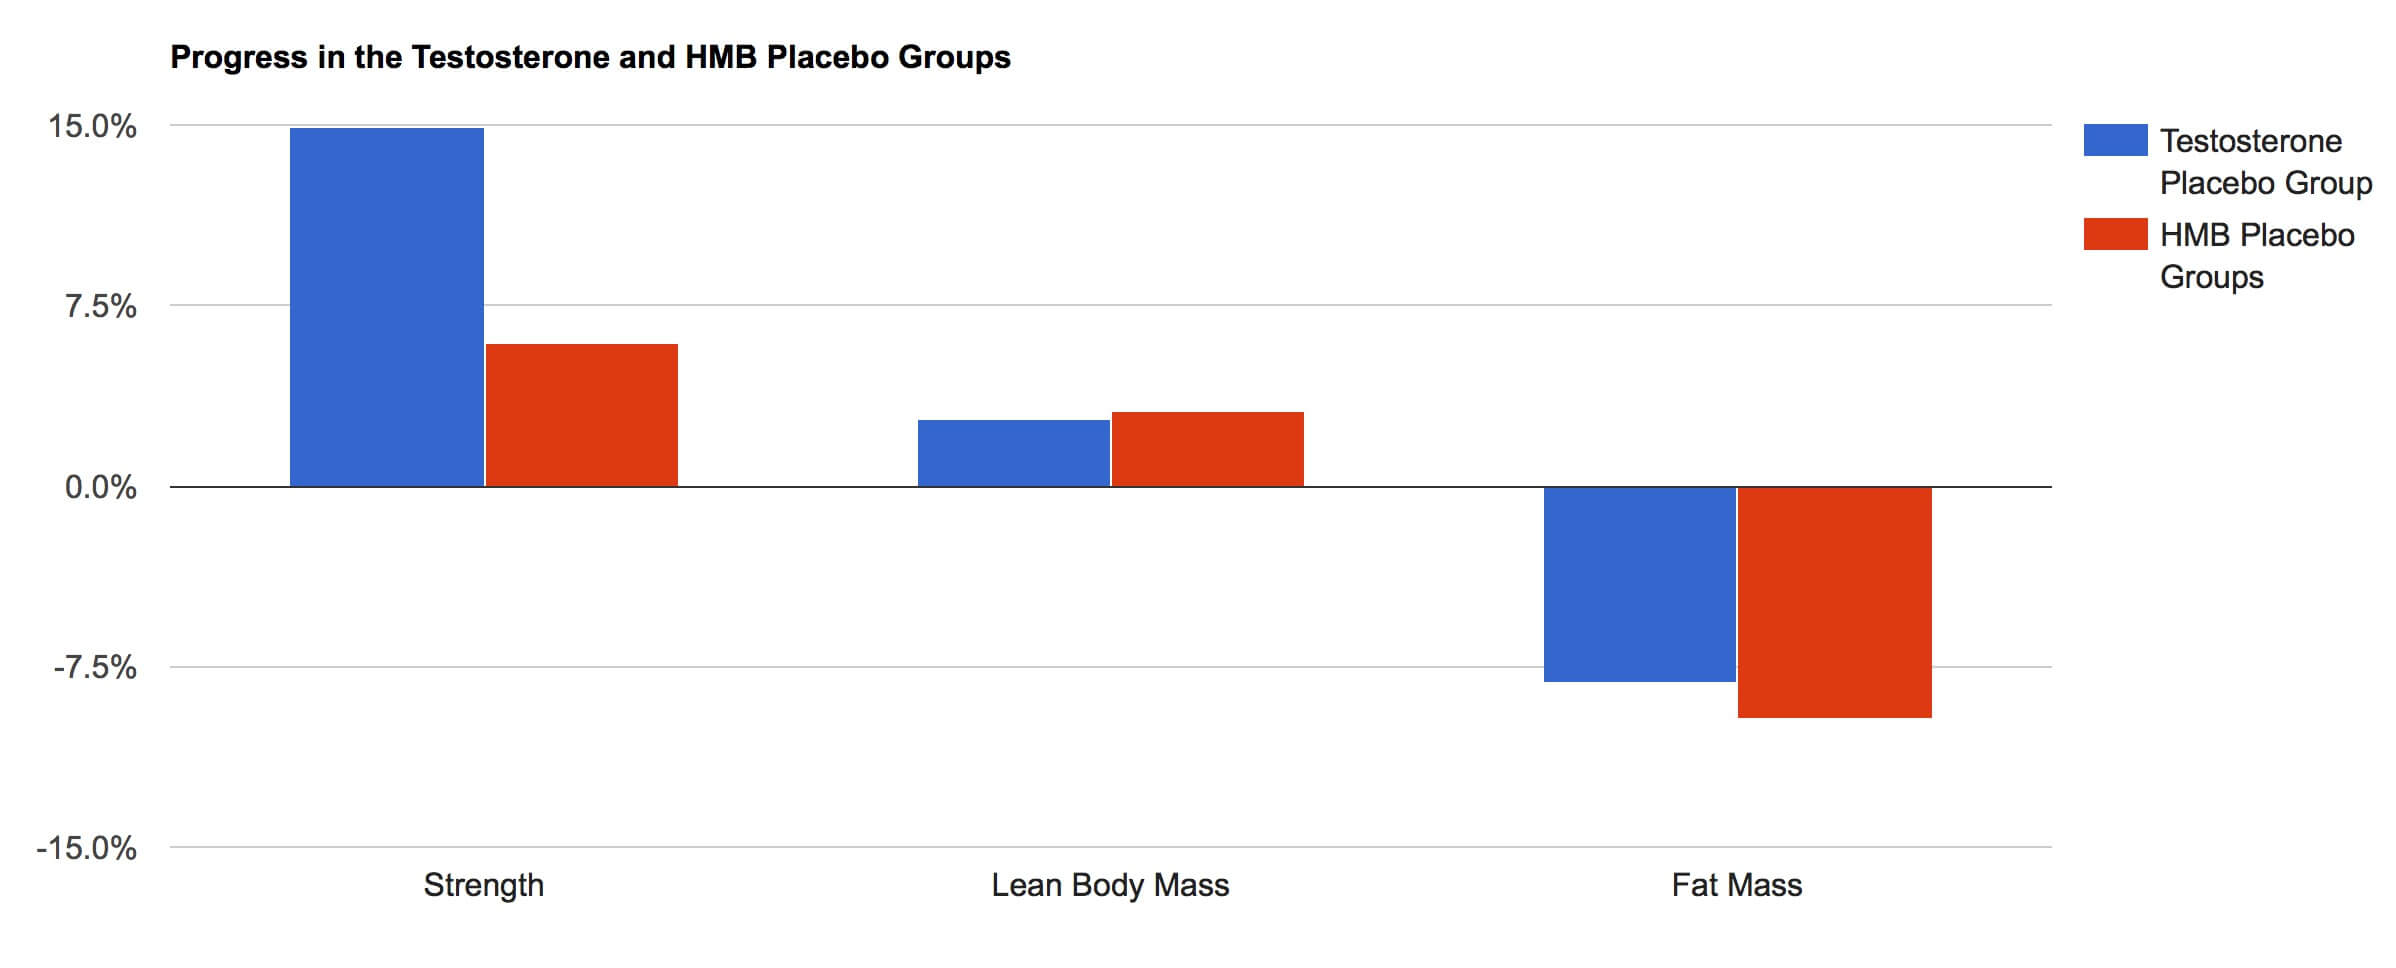 Фактически, стероидная группа плацебо набрала больше сил только на приседаниях и жиме лежа (35 кг), чем группы плацебо HMB, набравшие приседания, жим и тягу в сочетании (~ 25 кг)